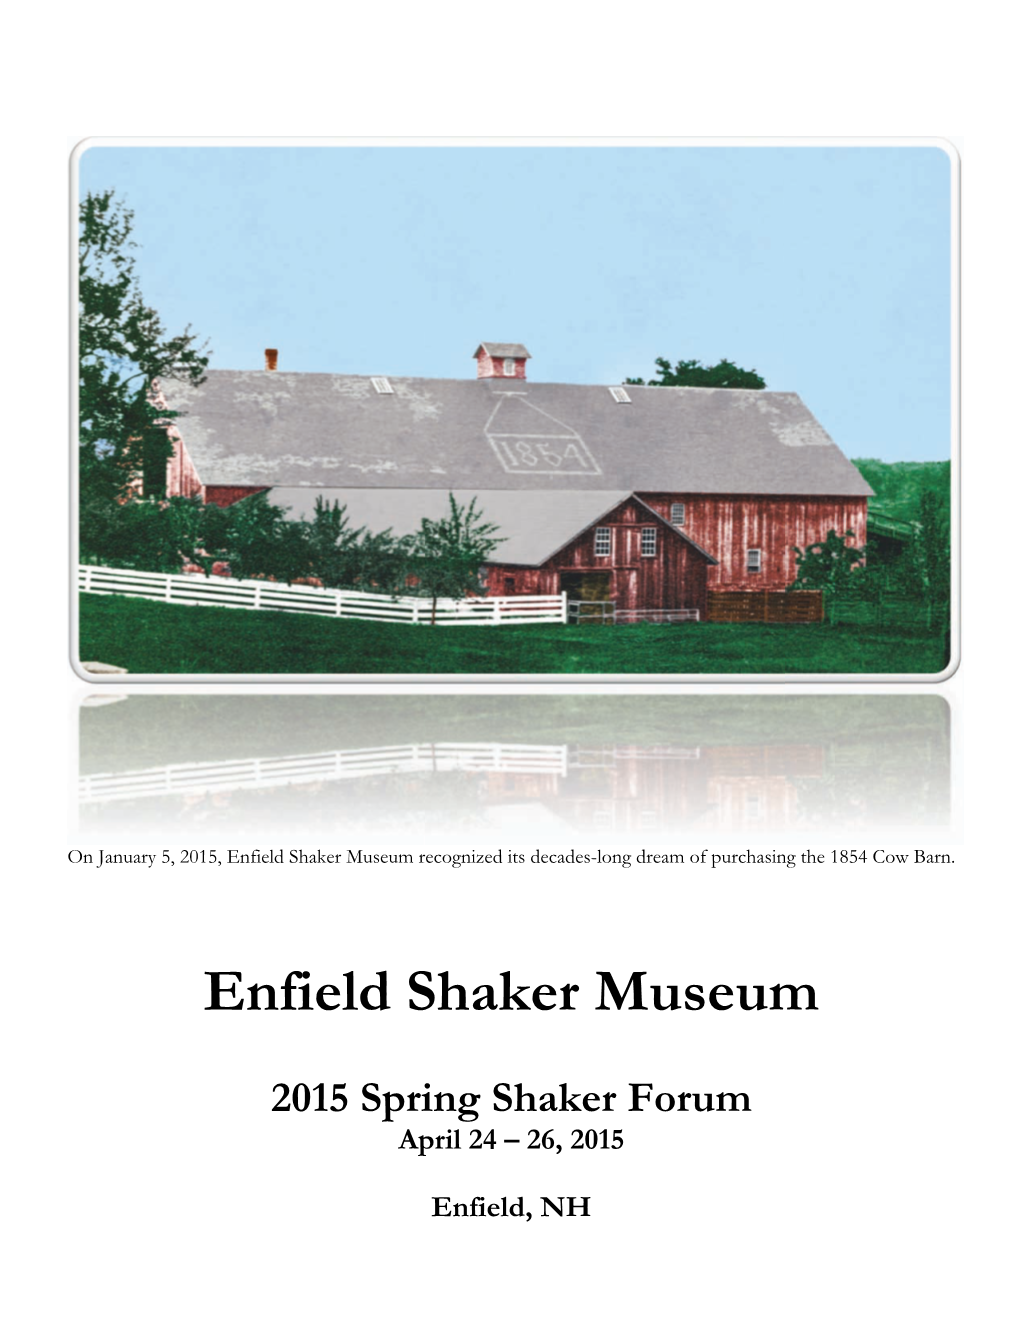 Spring Shaker Forum Program 2015